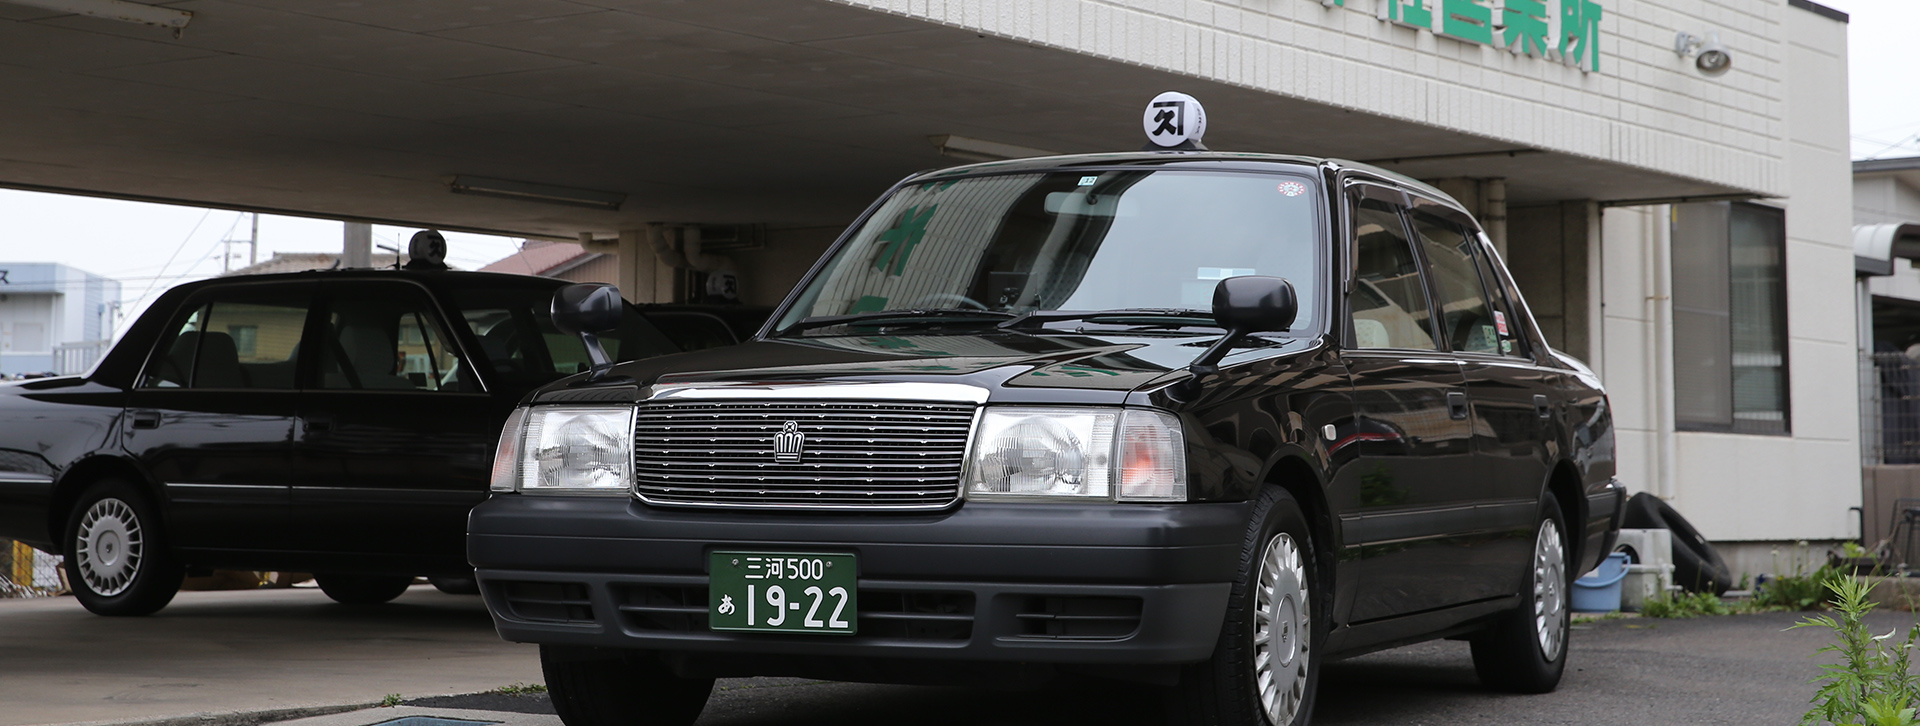 カネ久タクシー株式会社